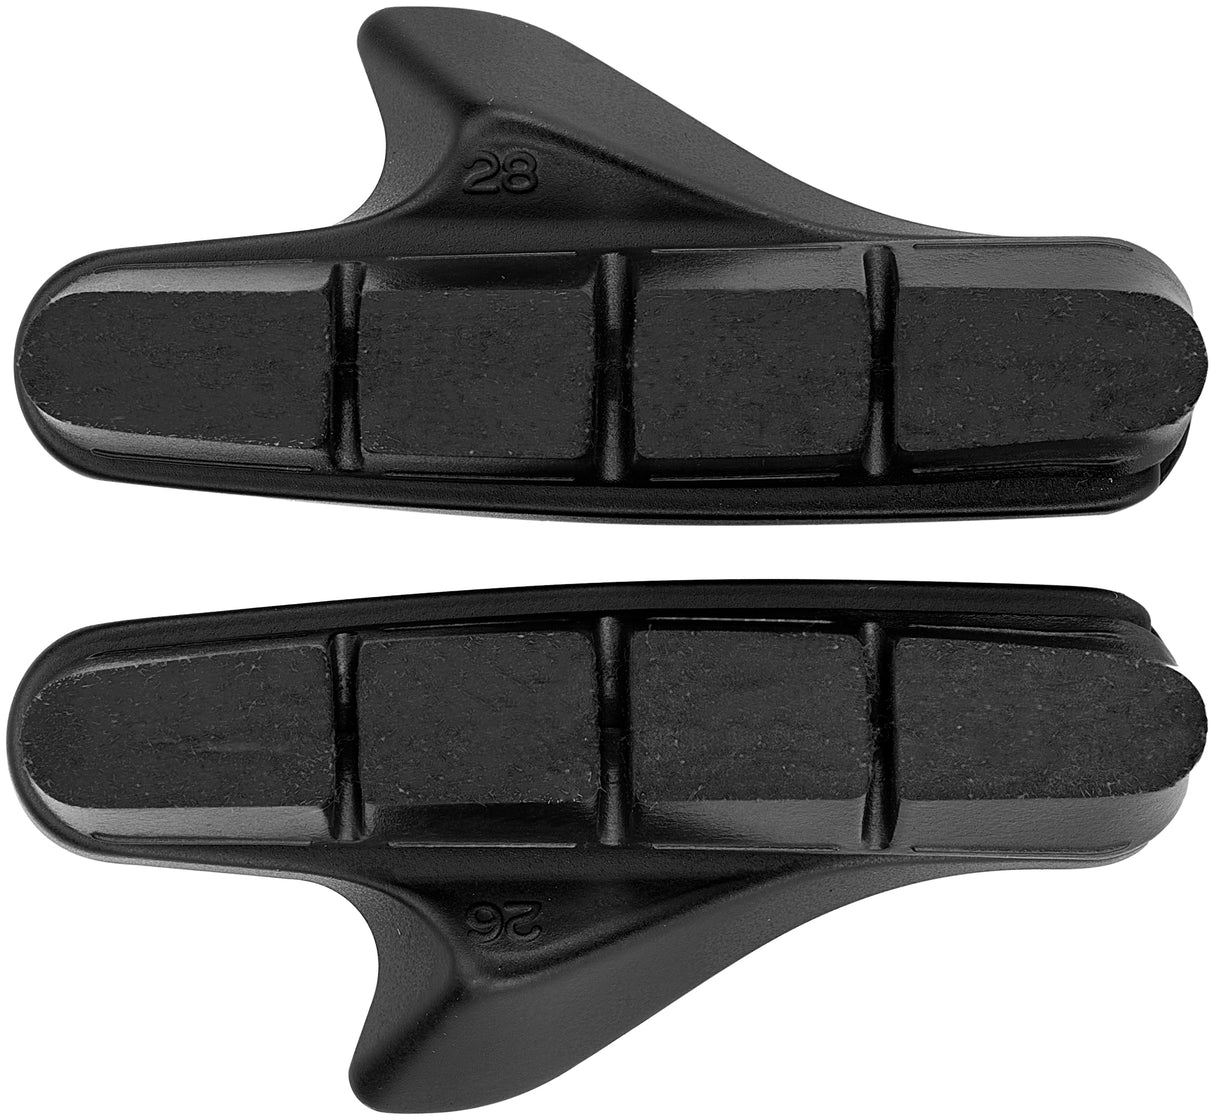 Patins de frein à cartouche Shimano R55C4 pour Shimano 105 noir